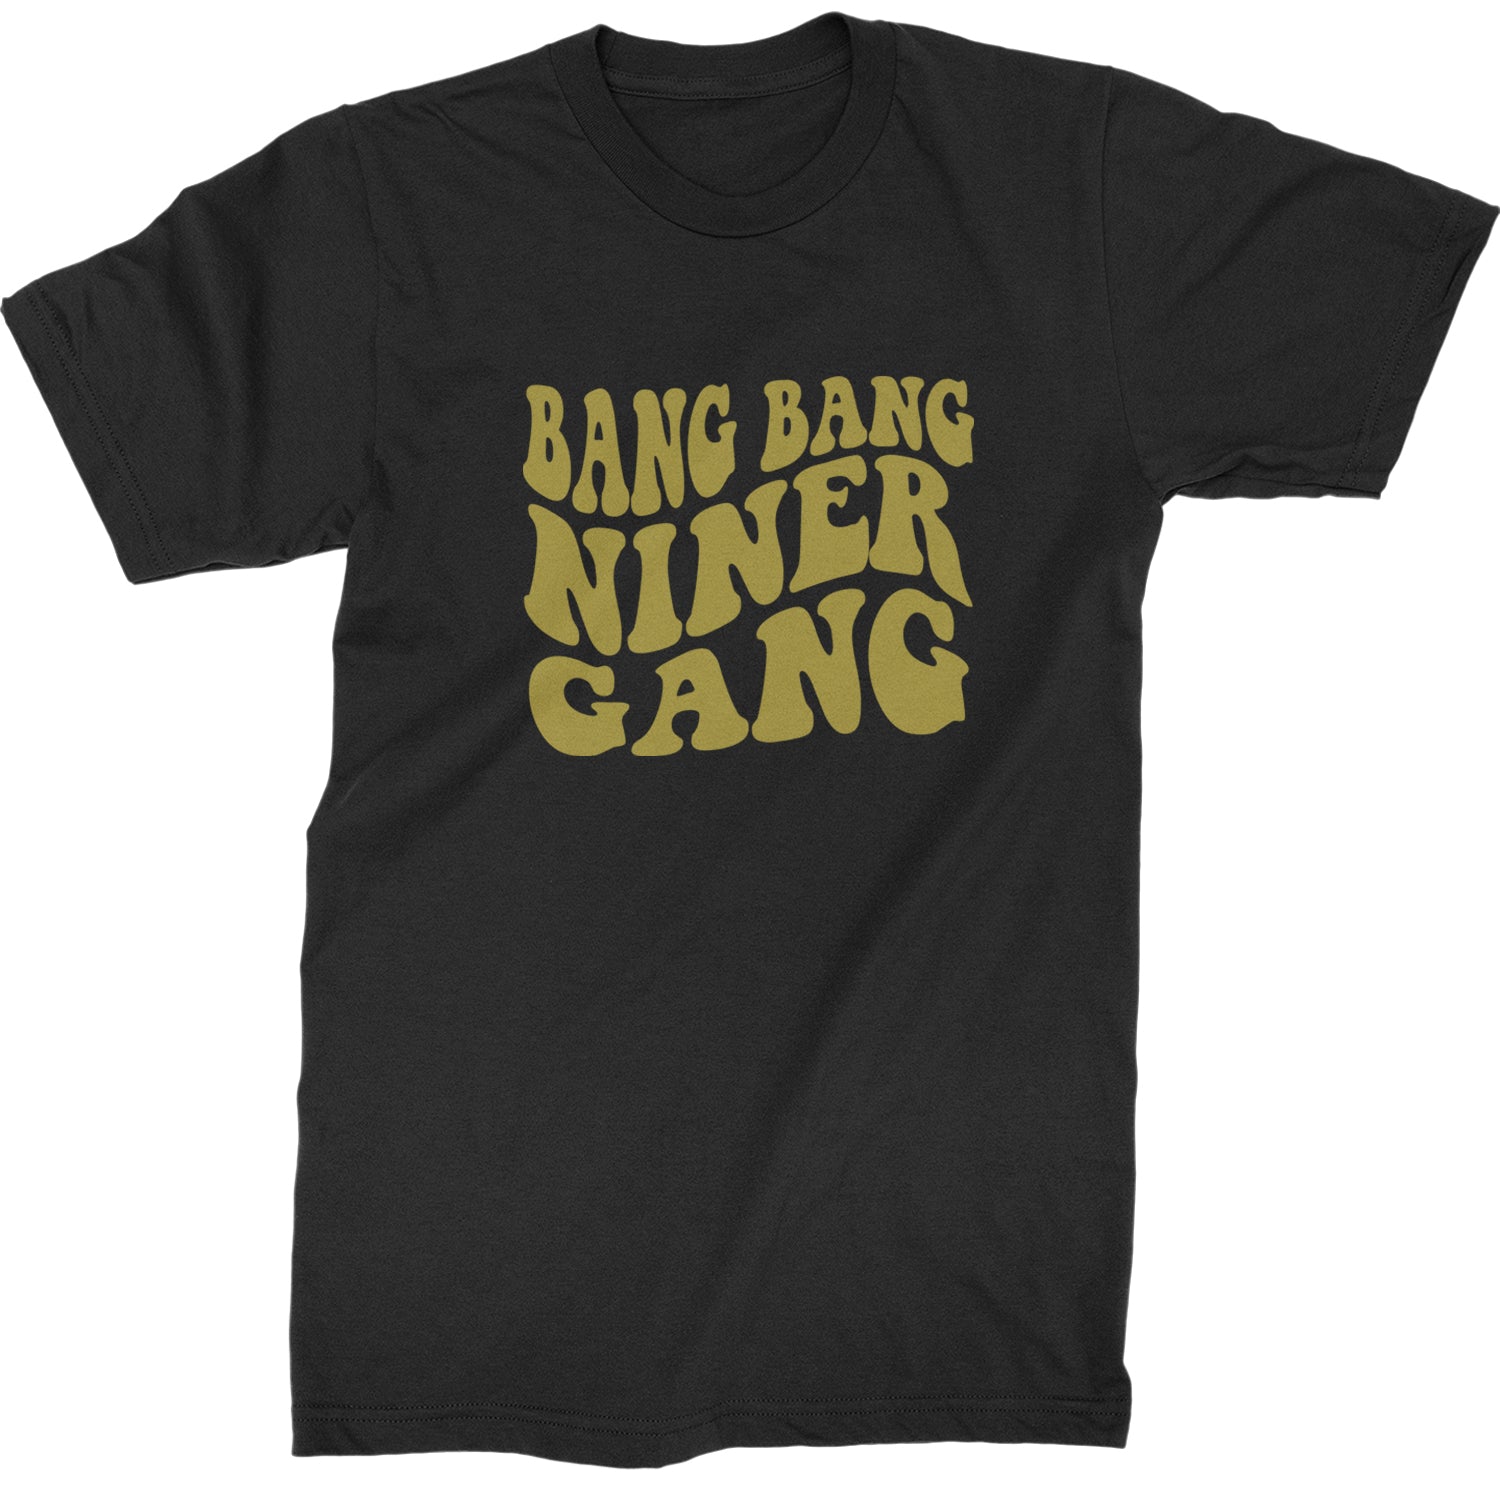 WAVE Bang Bang Niner Gang San Francisco Mens T-shirt